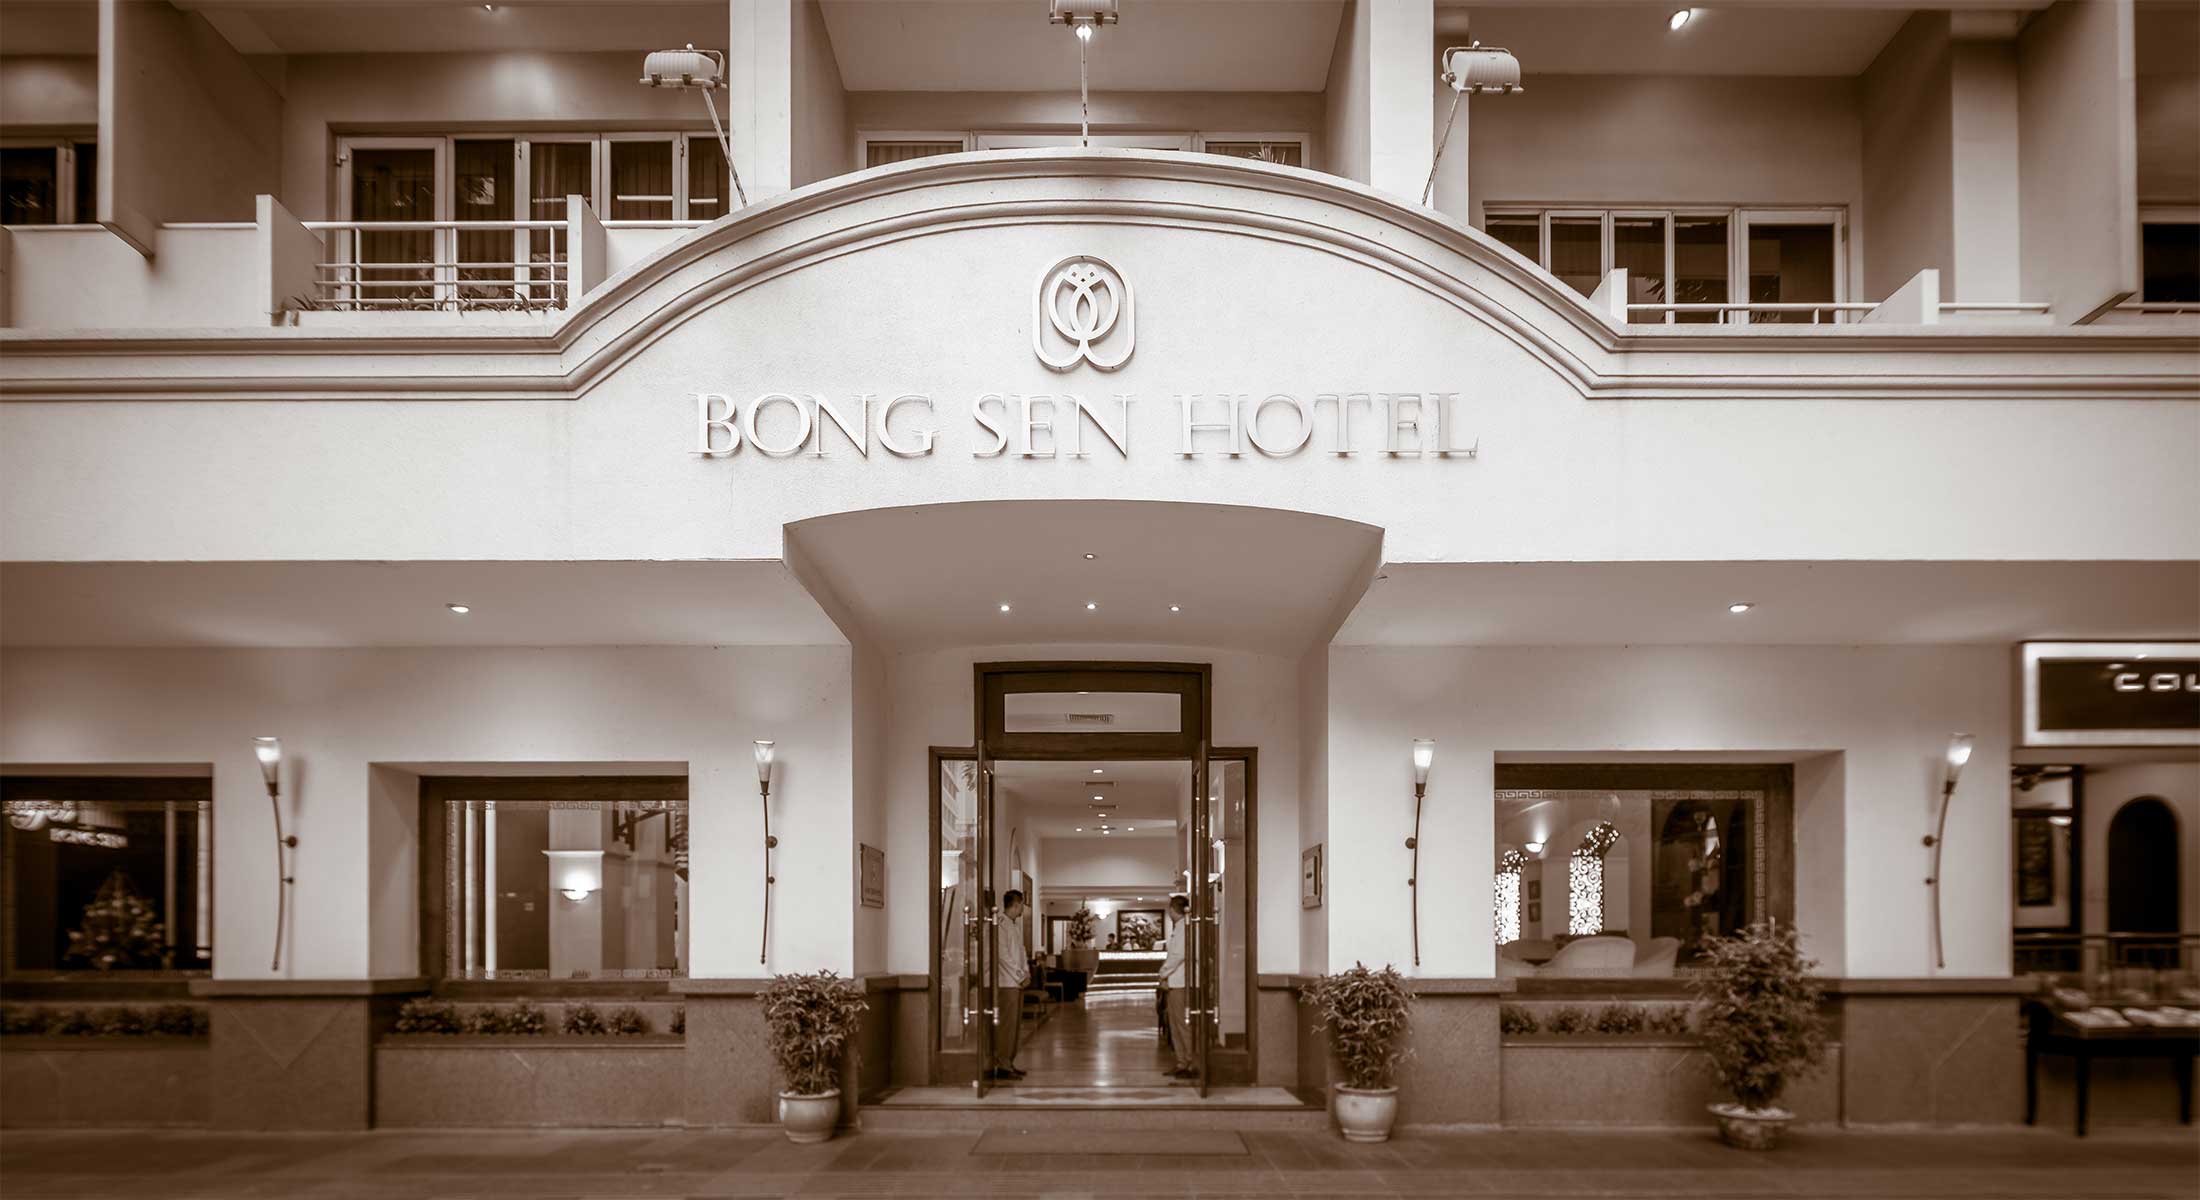 Bong Sen 2 Hotel